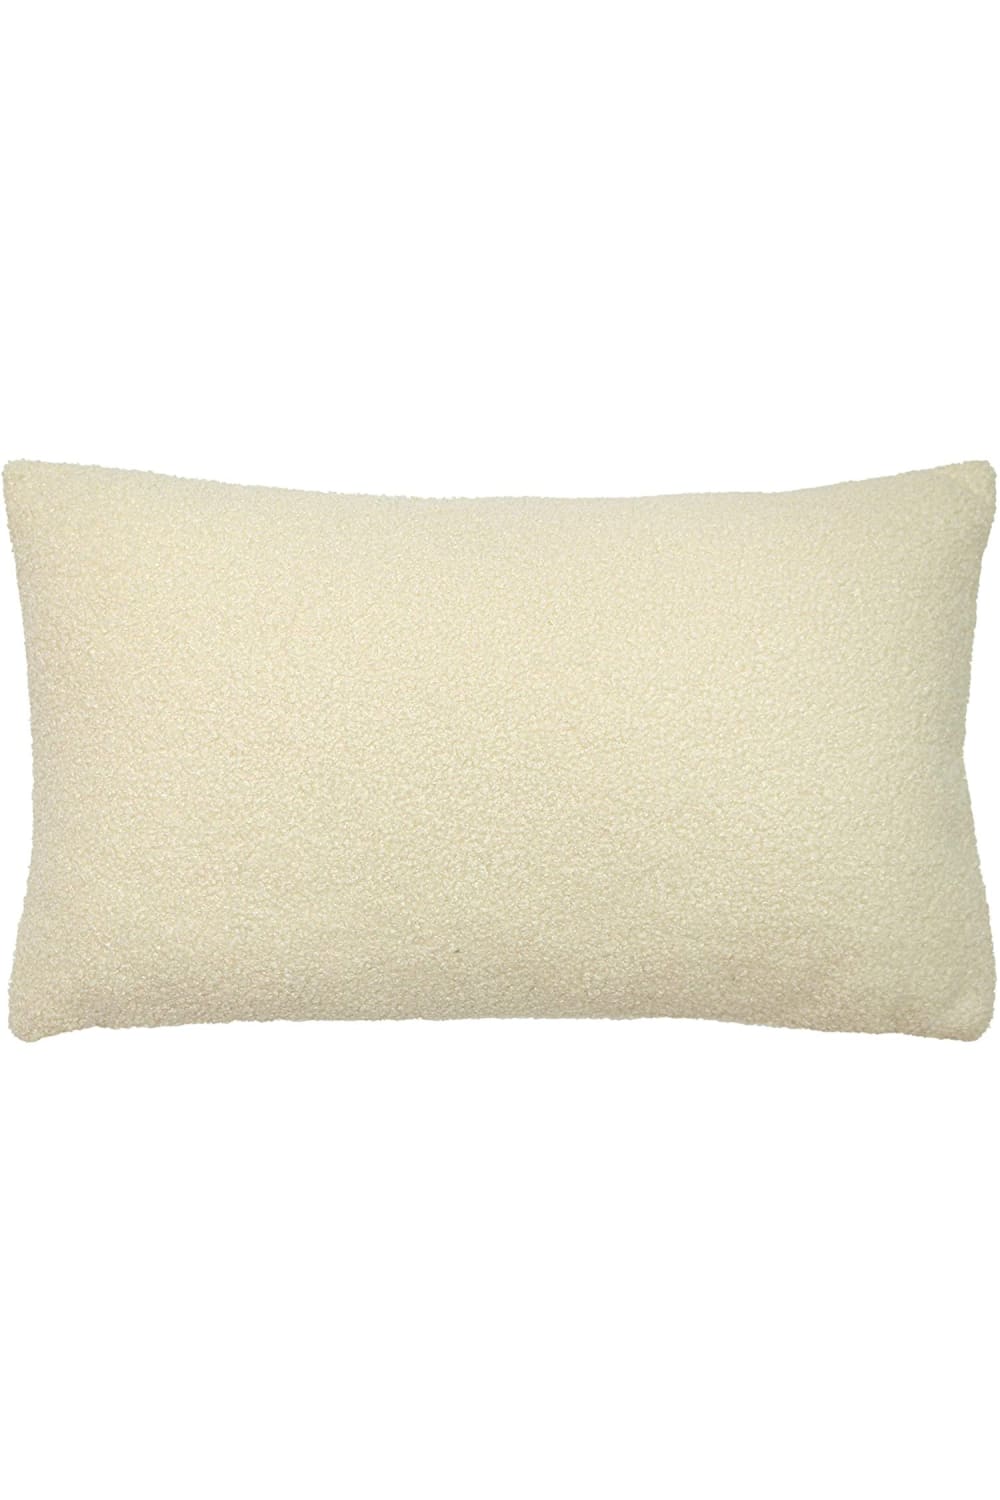 Furn Malham Cushion Cover (Ivory) (50cm x 50cm)